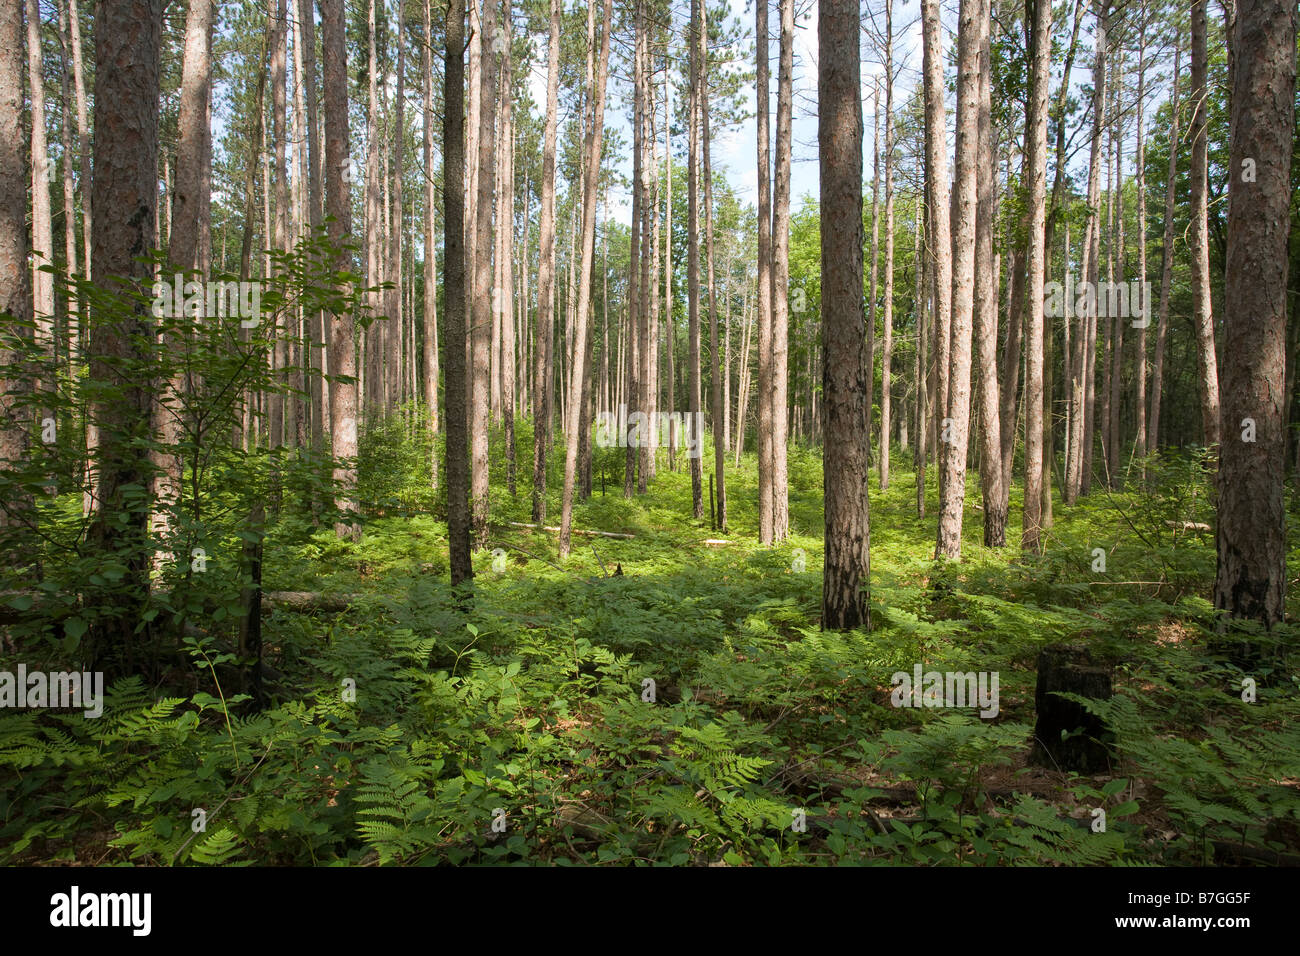 Forestiers Pinery, horizontal : Le soleil de troncs gris le pins du parc planté dans le sous-bois de fougères Banque D'Images